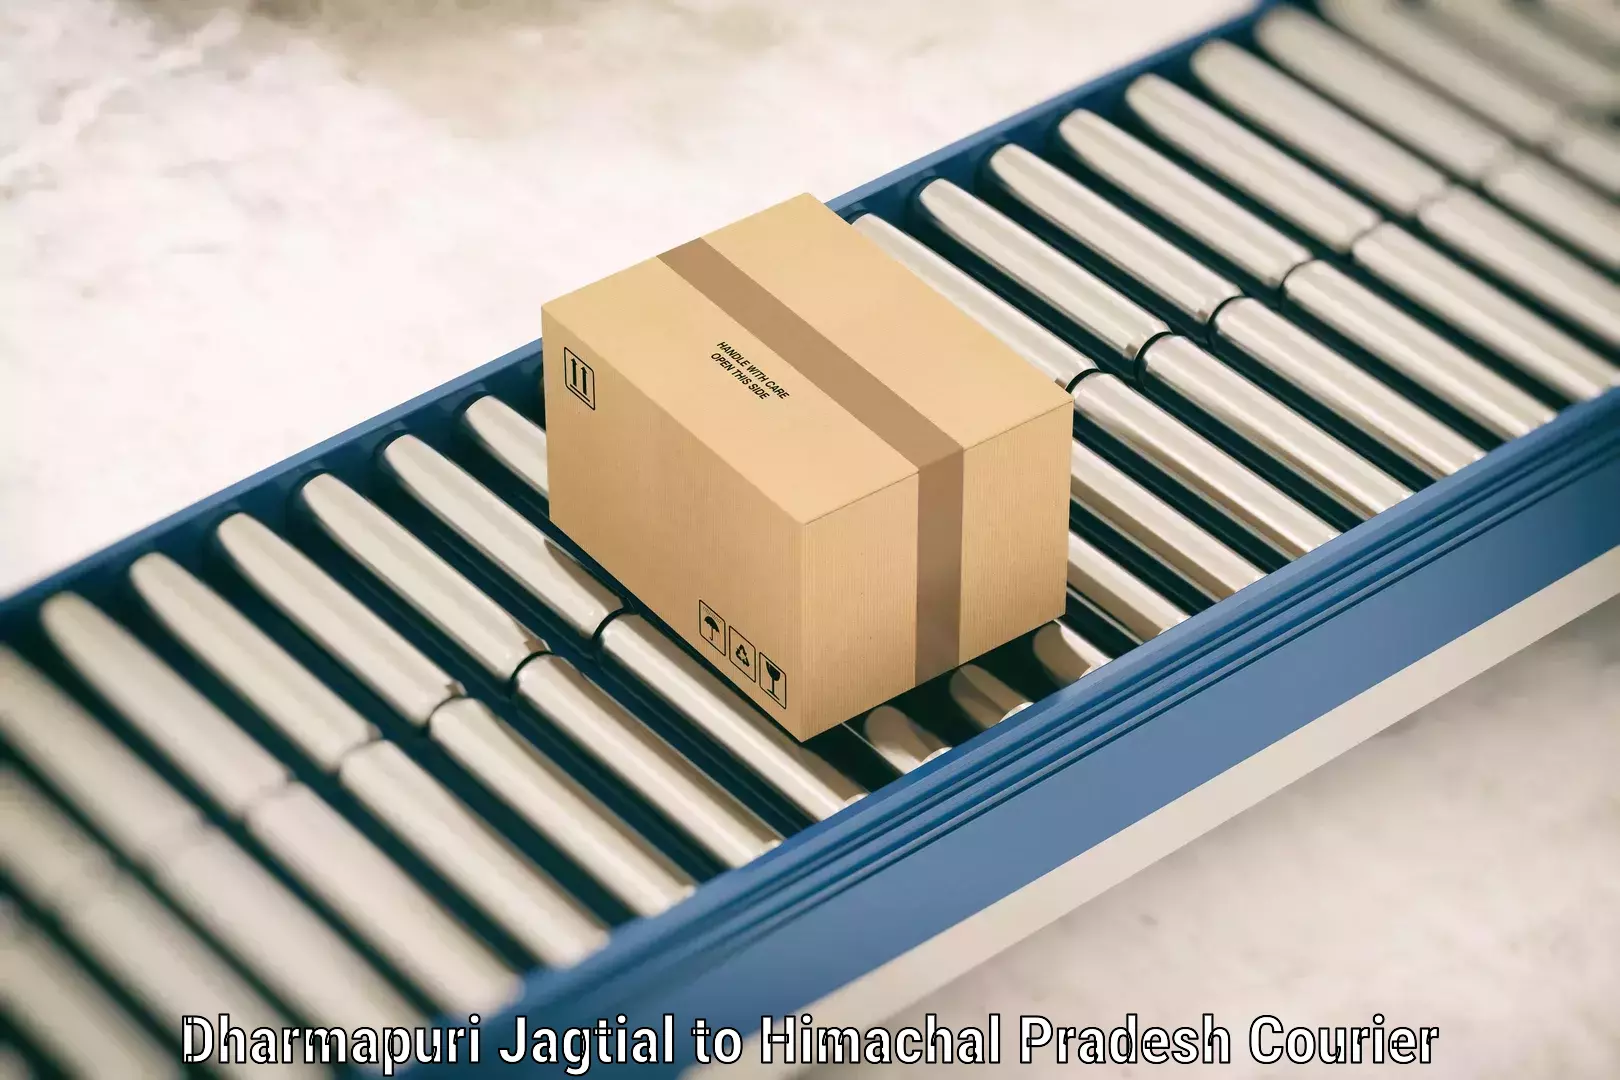 Single item baggage courier Dharmapuri Jagtial to Sirmaur